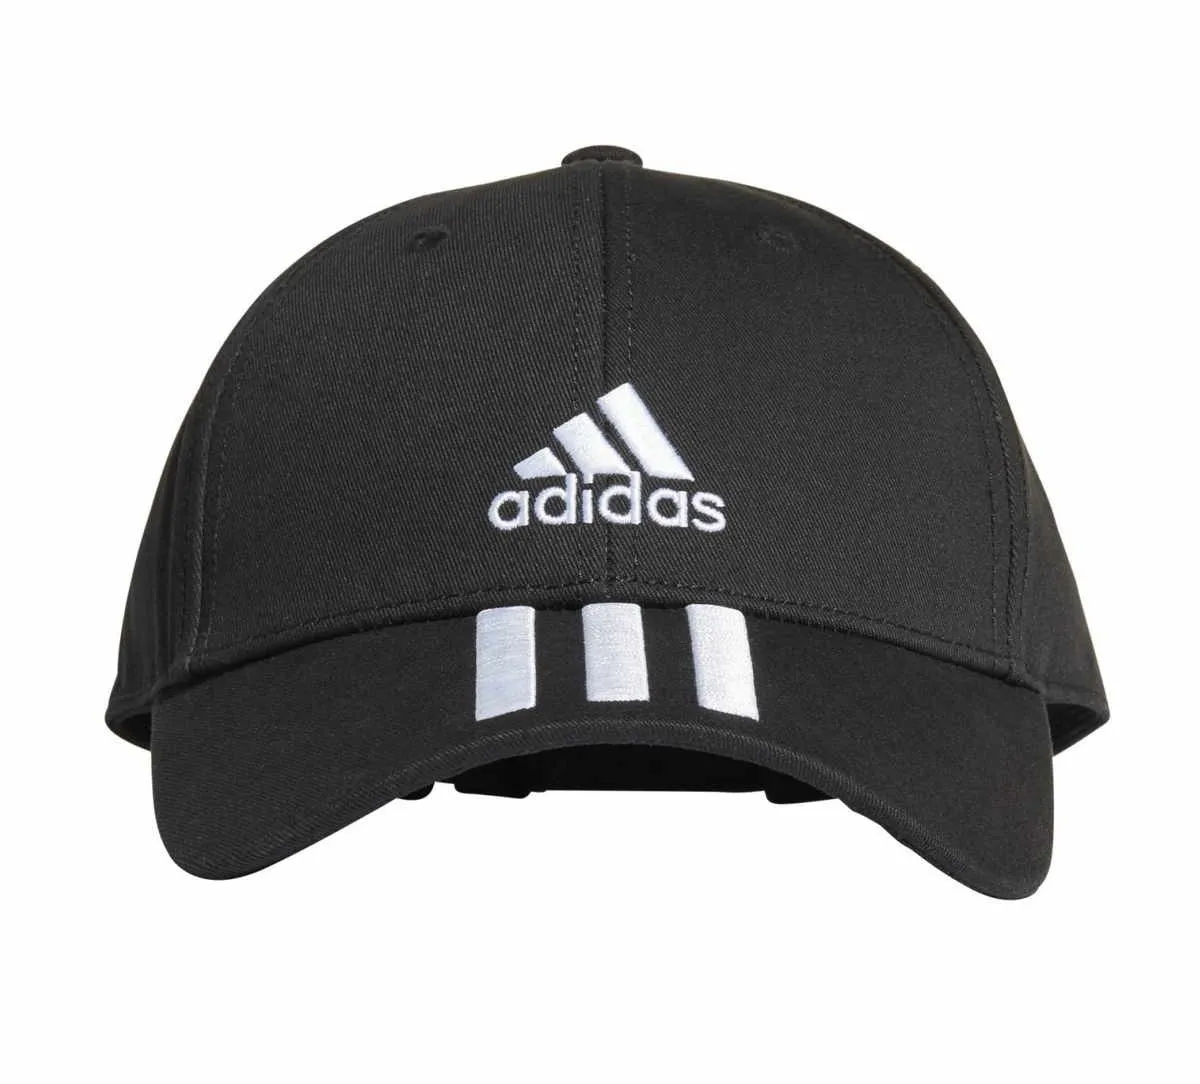 gorra adidas negra con rayas blancas